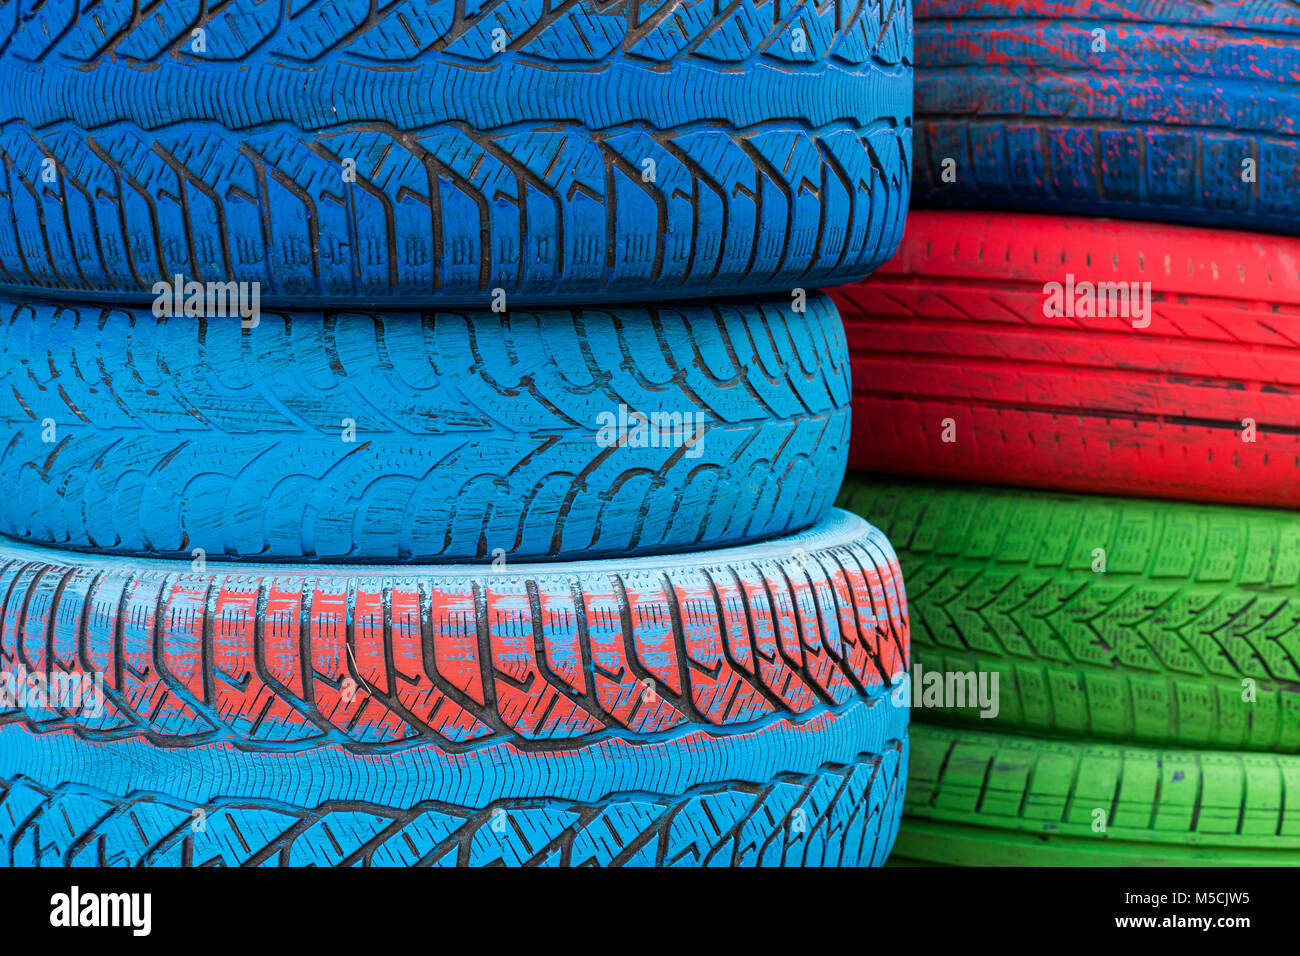 Colorful tires immagini e fotografie stock ad alta risoluzione - Alamy